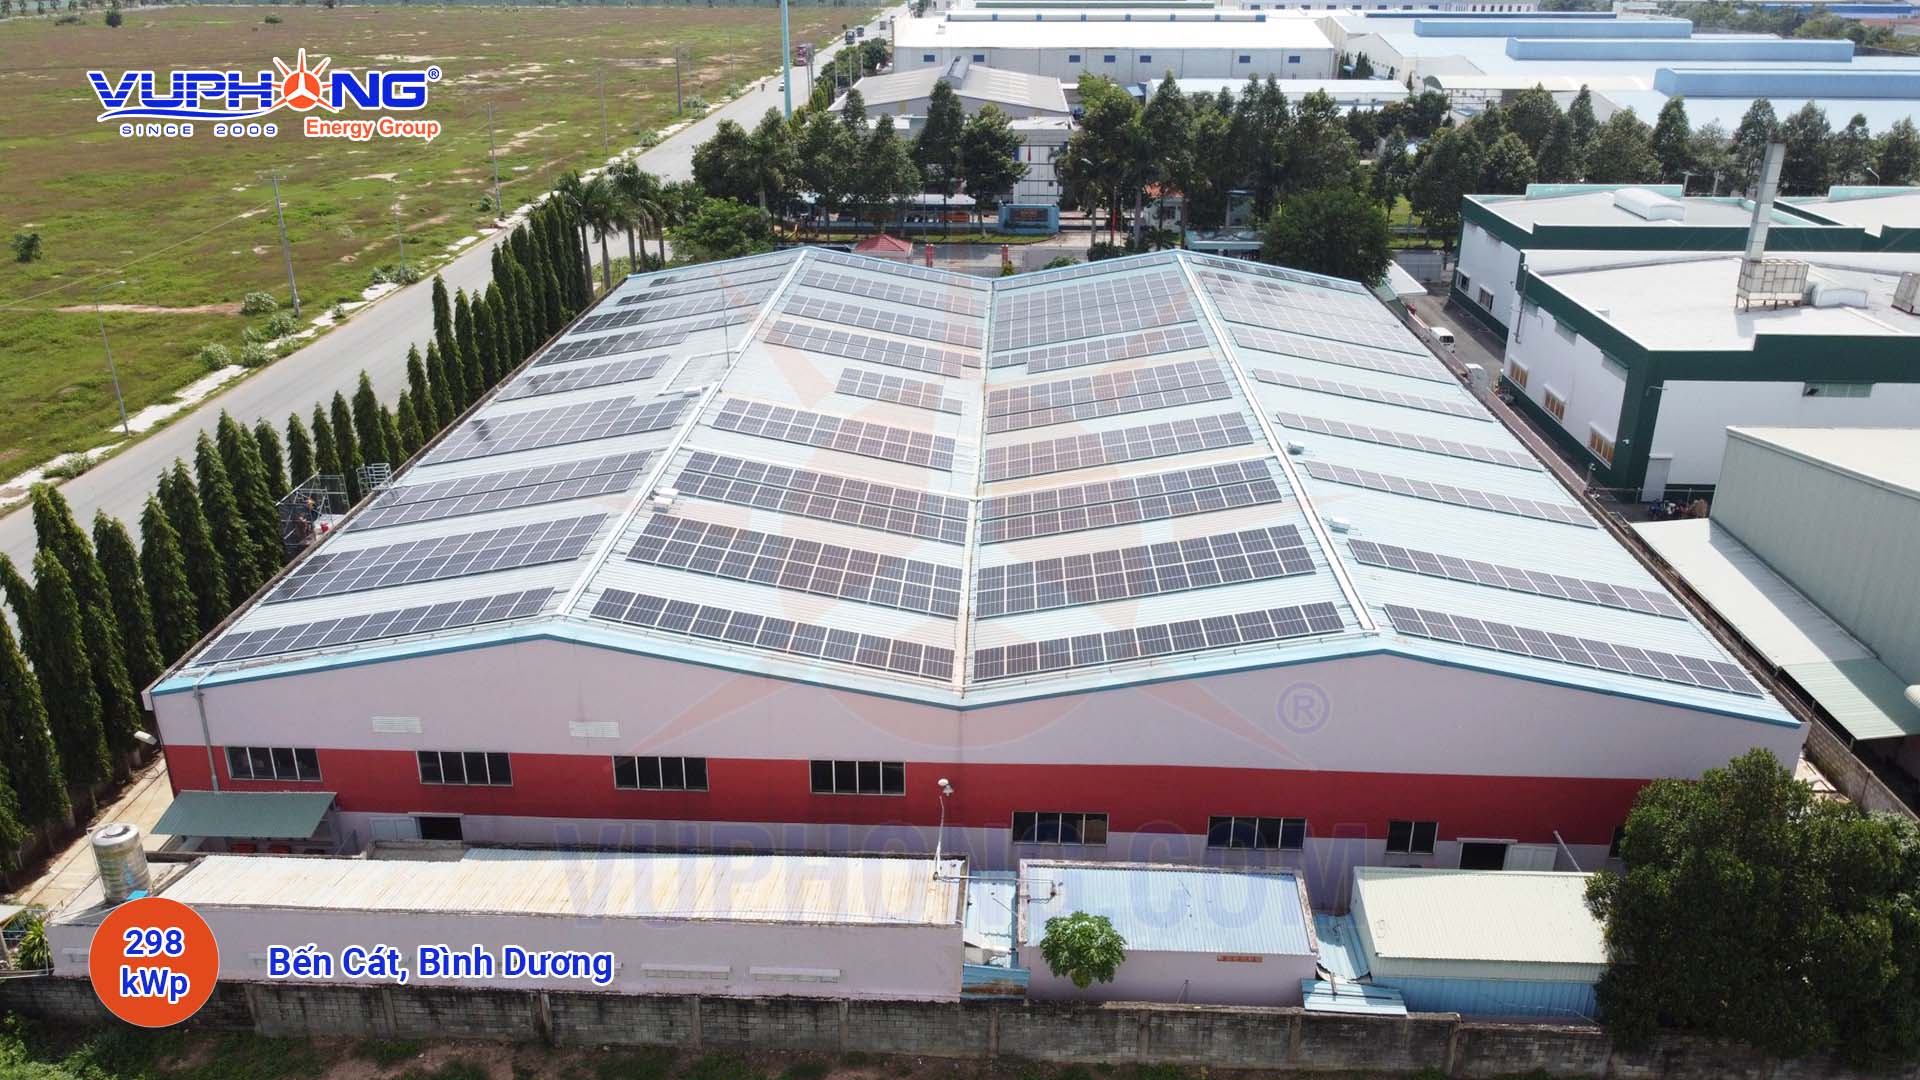 Hệ thống điện mặt trời hòa lưới 510kWp Vĩnh Cửu, Đồng Nai - Công Ty Cổ Phần Vũ Phong Energy Group